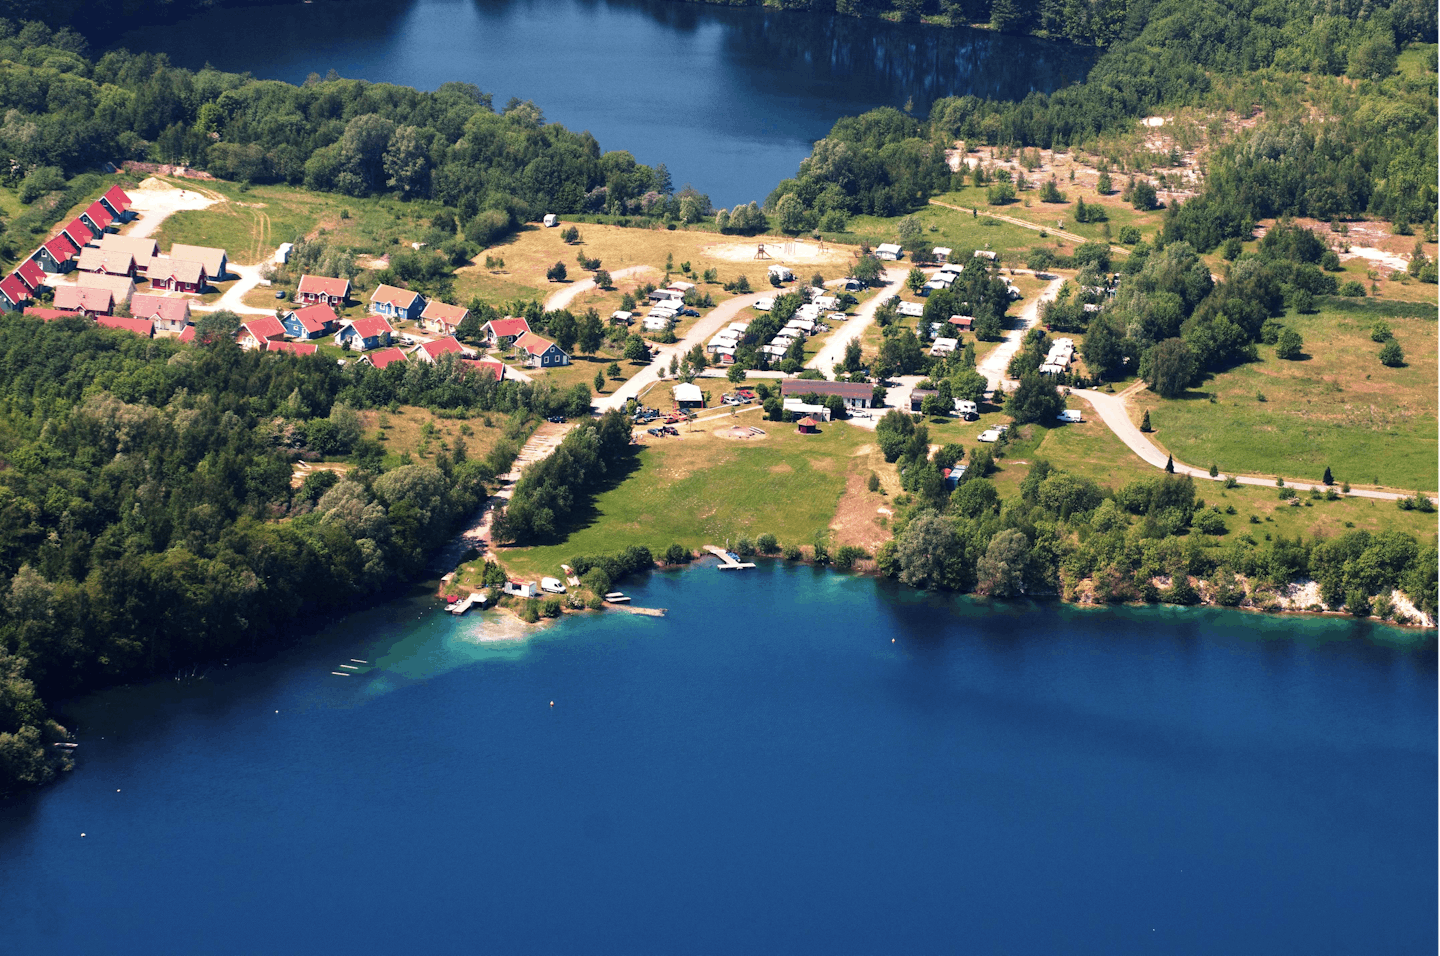 Ferienpark Kreidesee - Übersicht auf das gesamte Campingplatz Gelände 